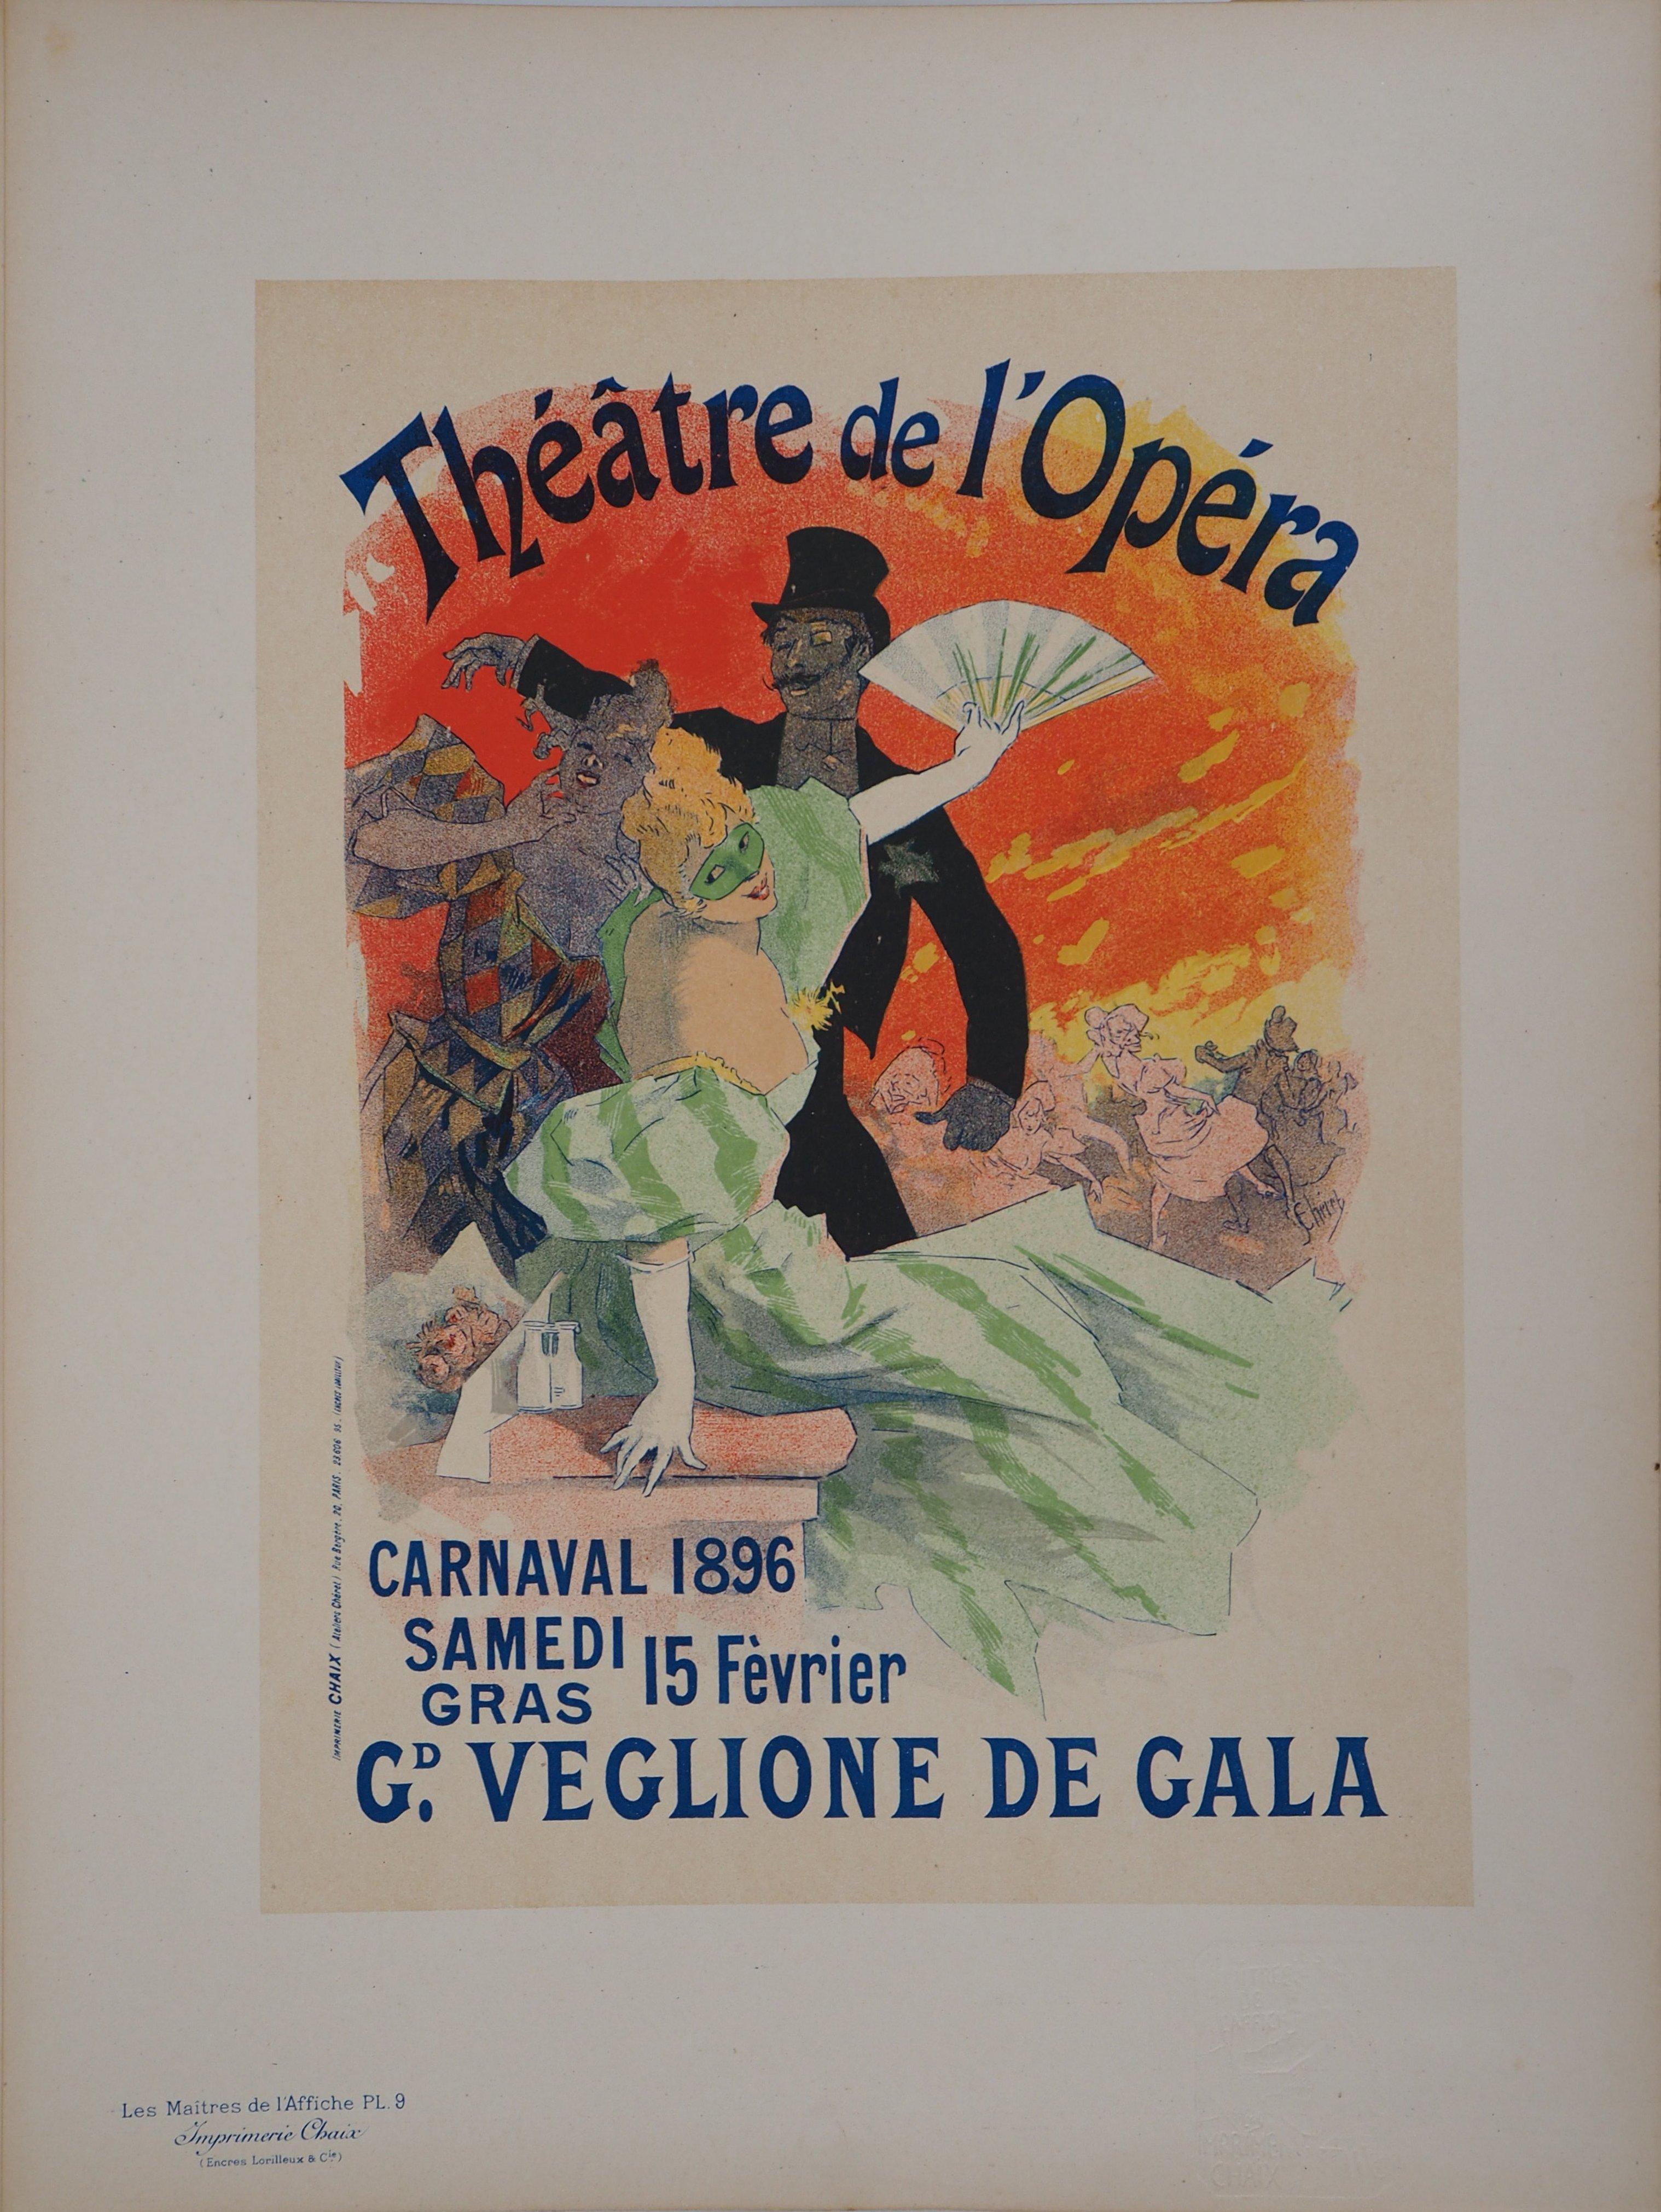 Théâtre de l'Opéra (Carnival) - Lithograph (Les Maîtres de l'Affiche), 1895 - Print by Jules Chéret